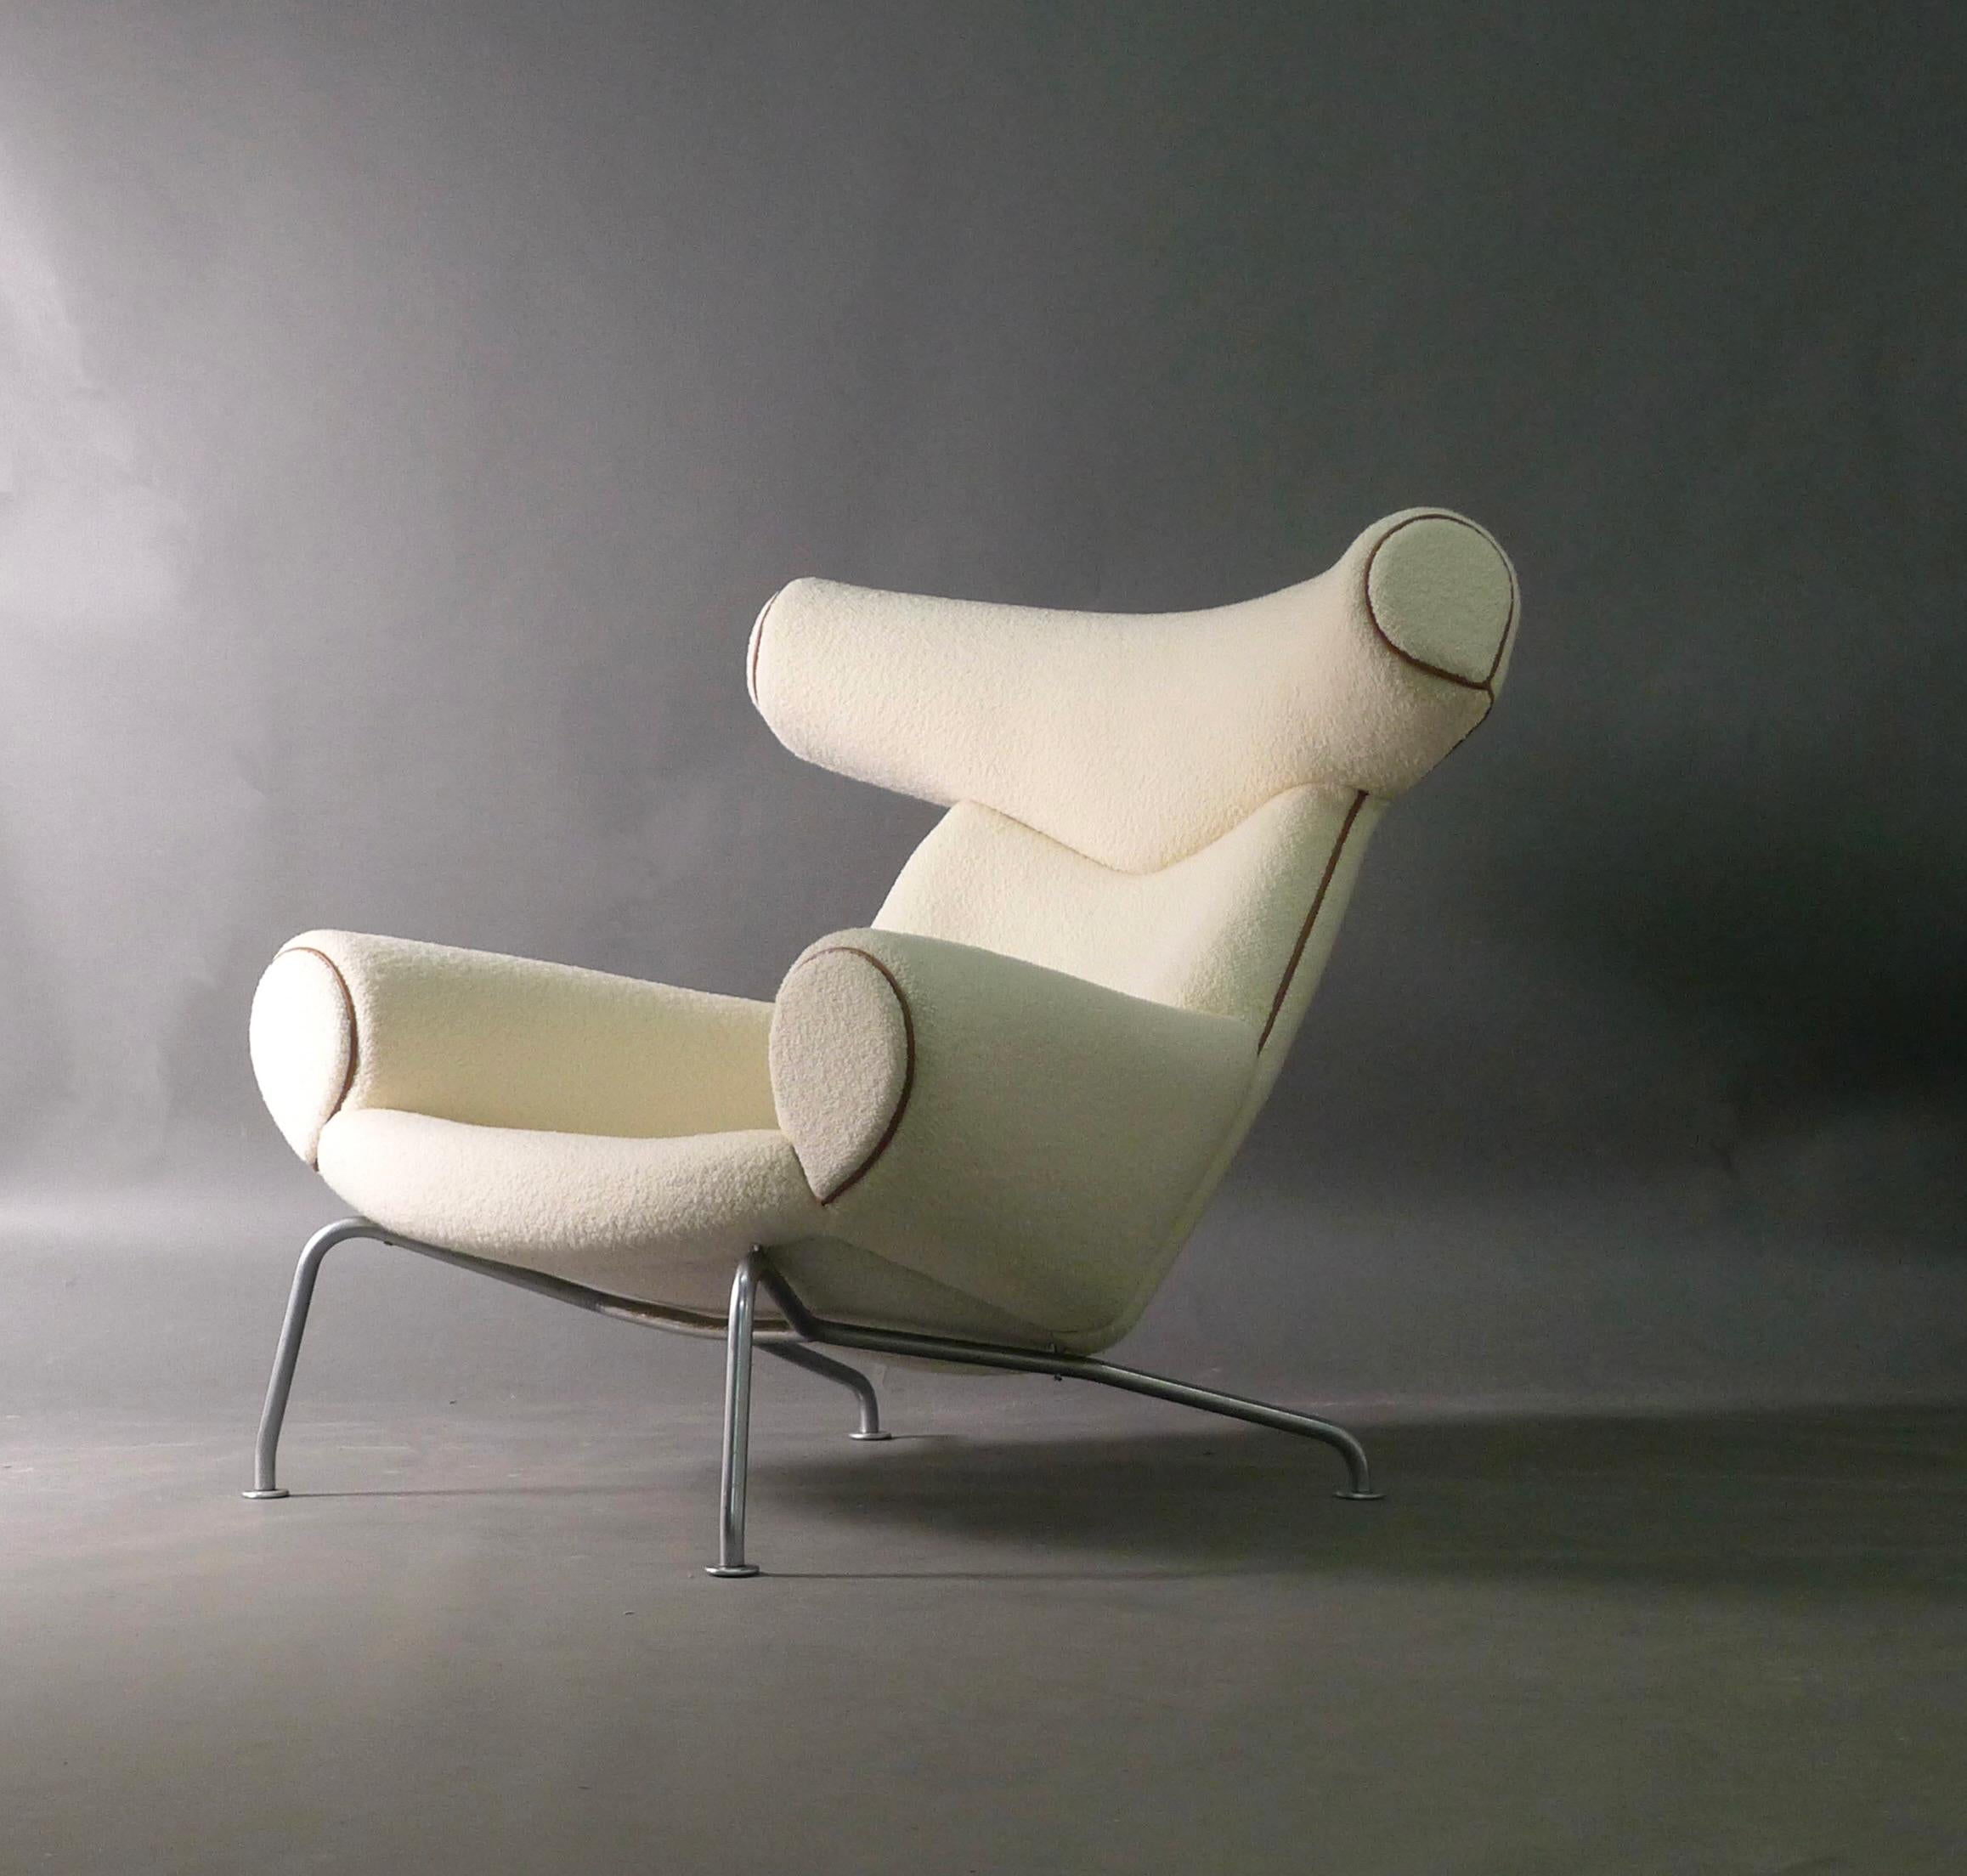 Der Ox Chair von Hans J. Wegner gehört zu den ikonischsten Entwürfen des 20. Jahrhunderts und ist auf der ganzen Welt bekannt. Das Modell AP-46 Ox Chair verbindet Funktion und Komfort mit Stil und Innovation und ist ein echtes Schmuckstück. Der aus